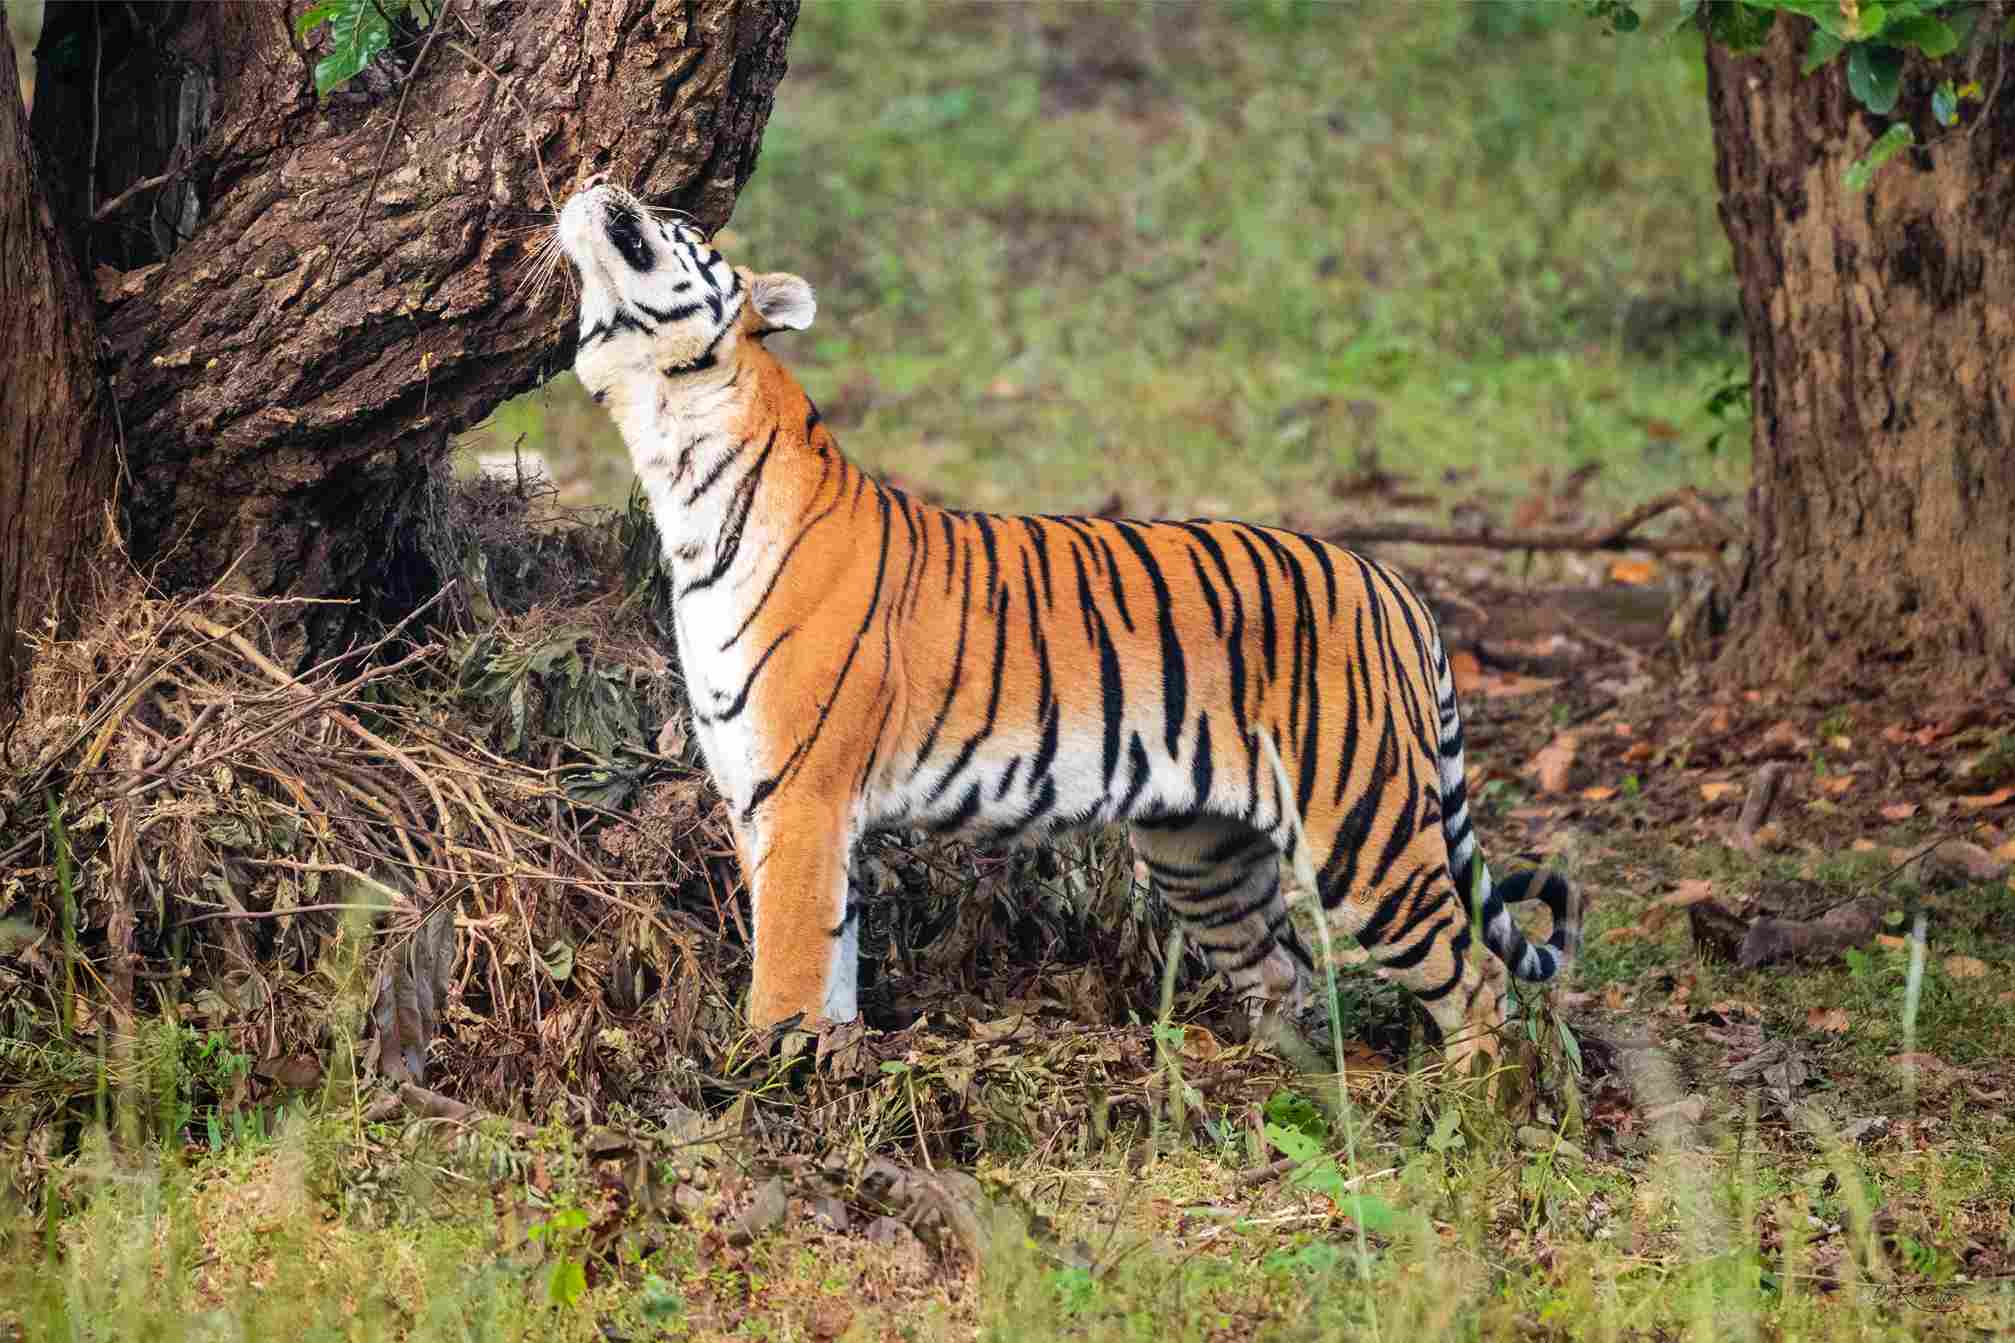 The tigers at Kanha National Park in Madhya Pradesh